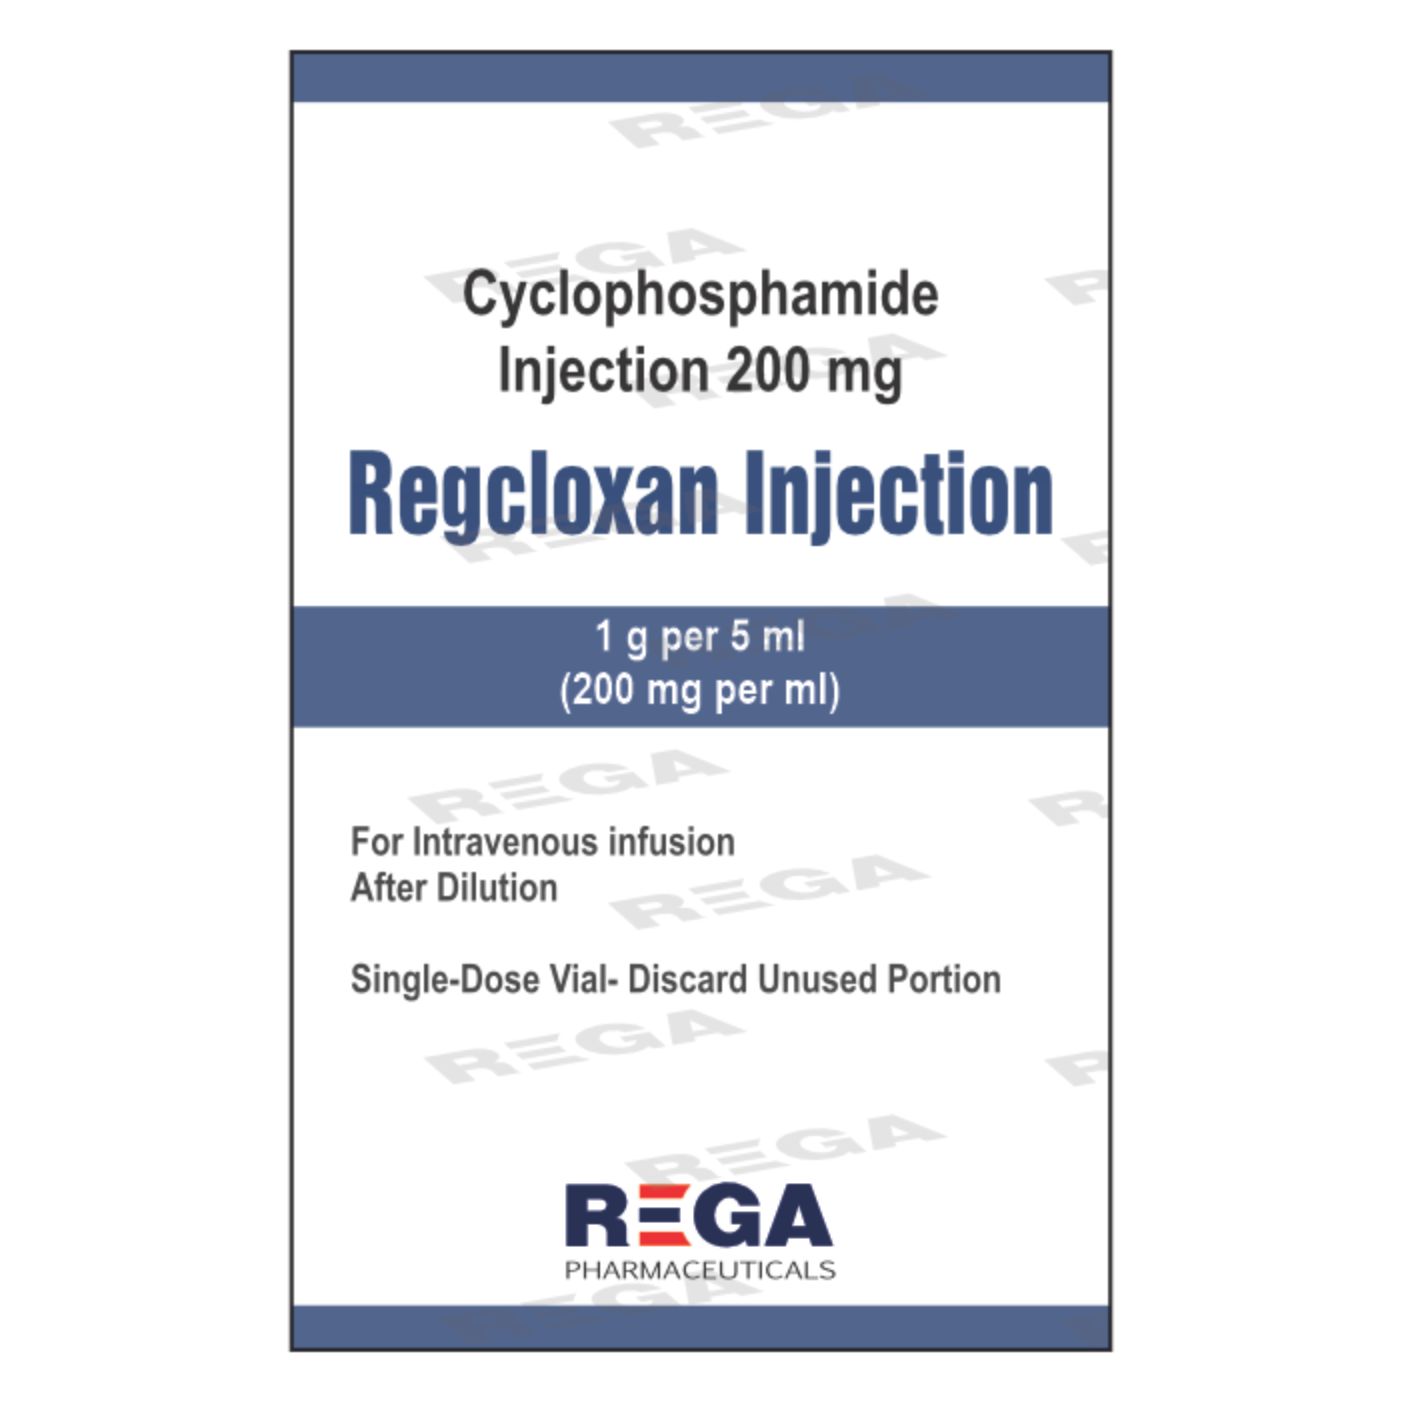 Cyclophosphamide Injection 200 mg, 1 G